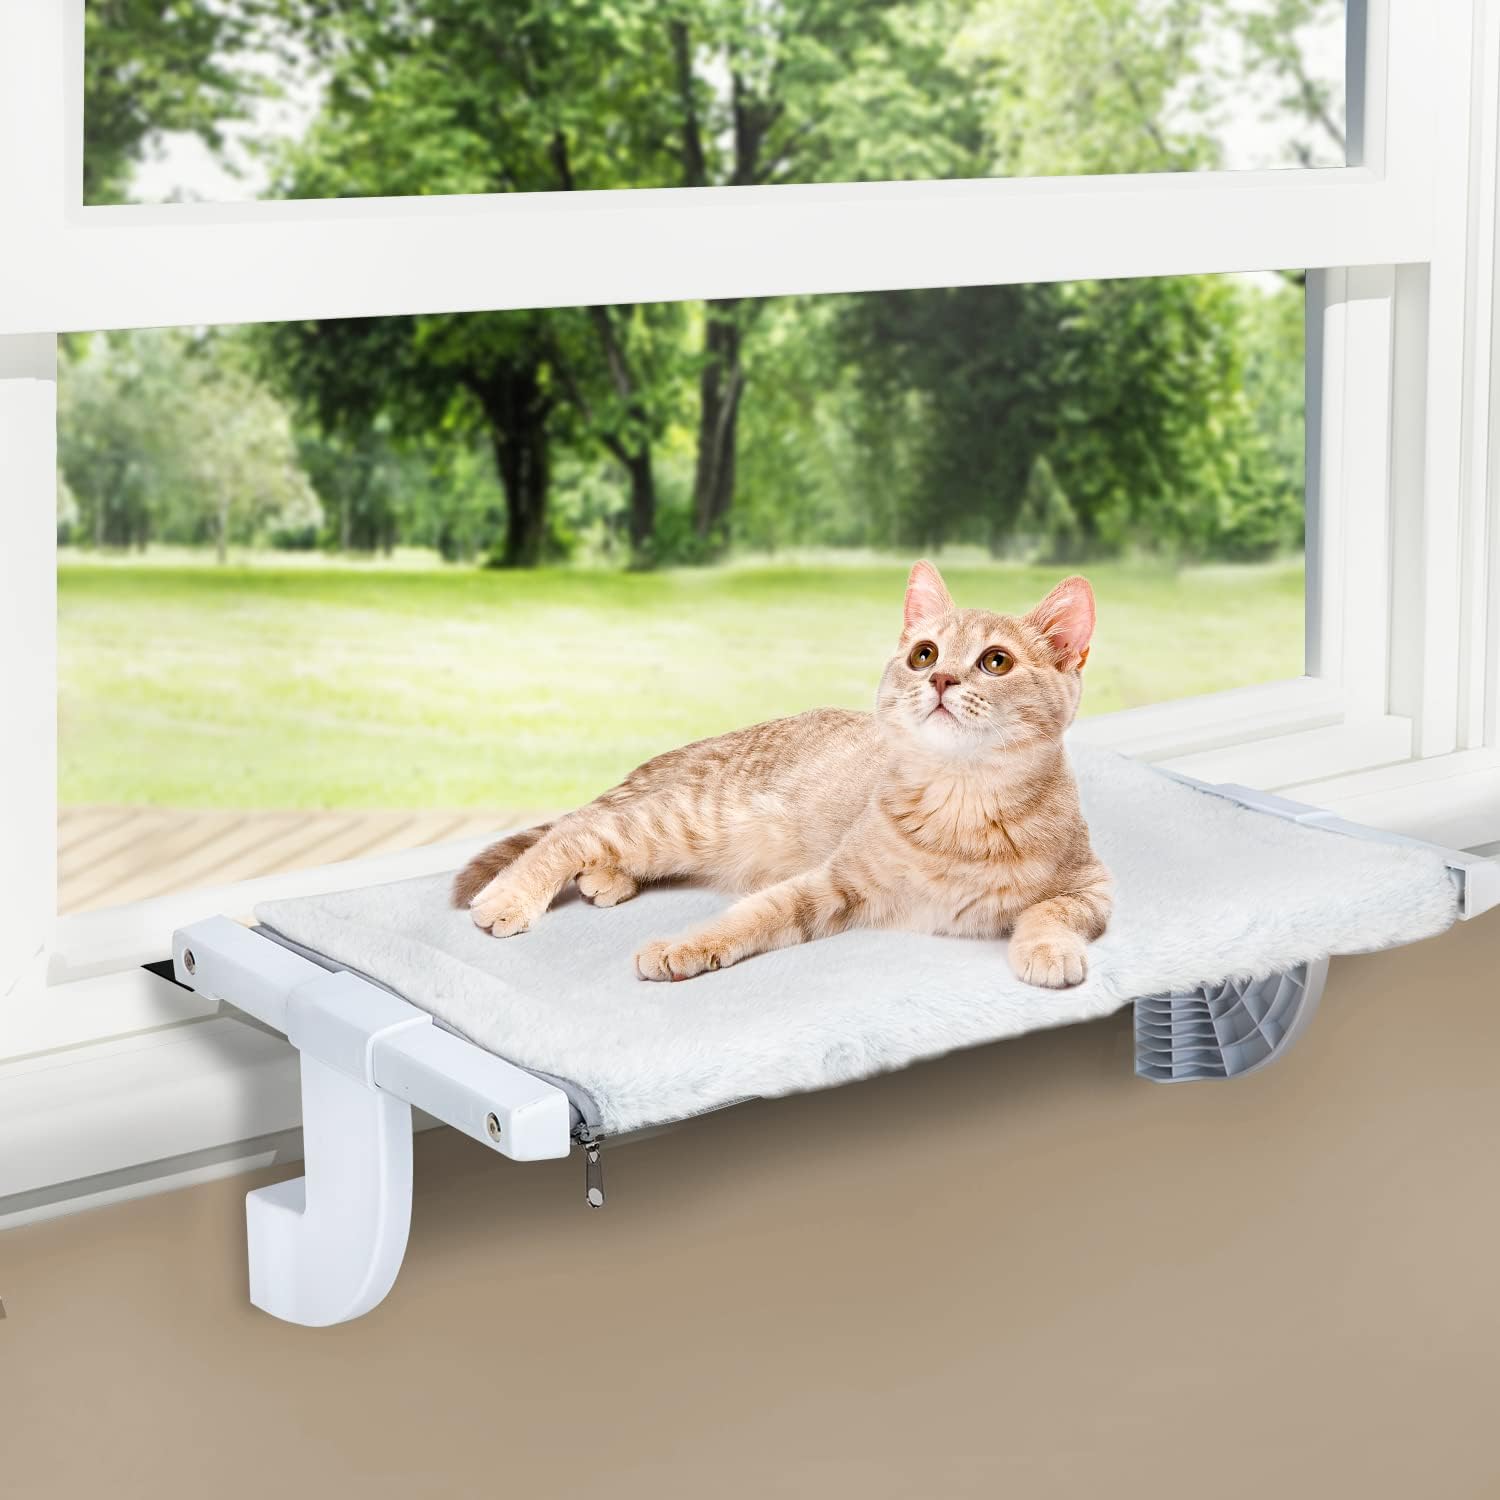 Hamaca para ventana de gato para gatos de interior, resistente, ajustable,  duradera, estable, que proporciona un baño de sol completo, ahorro de